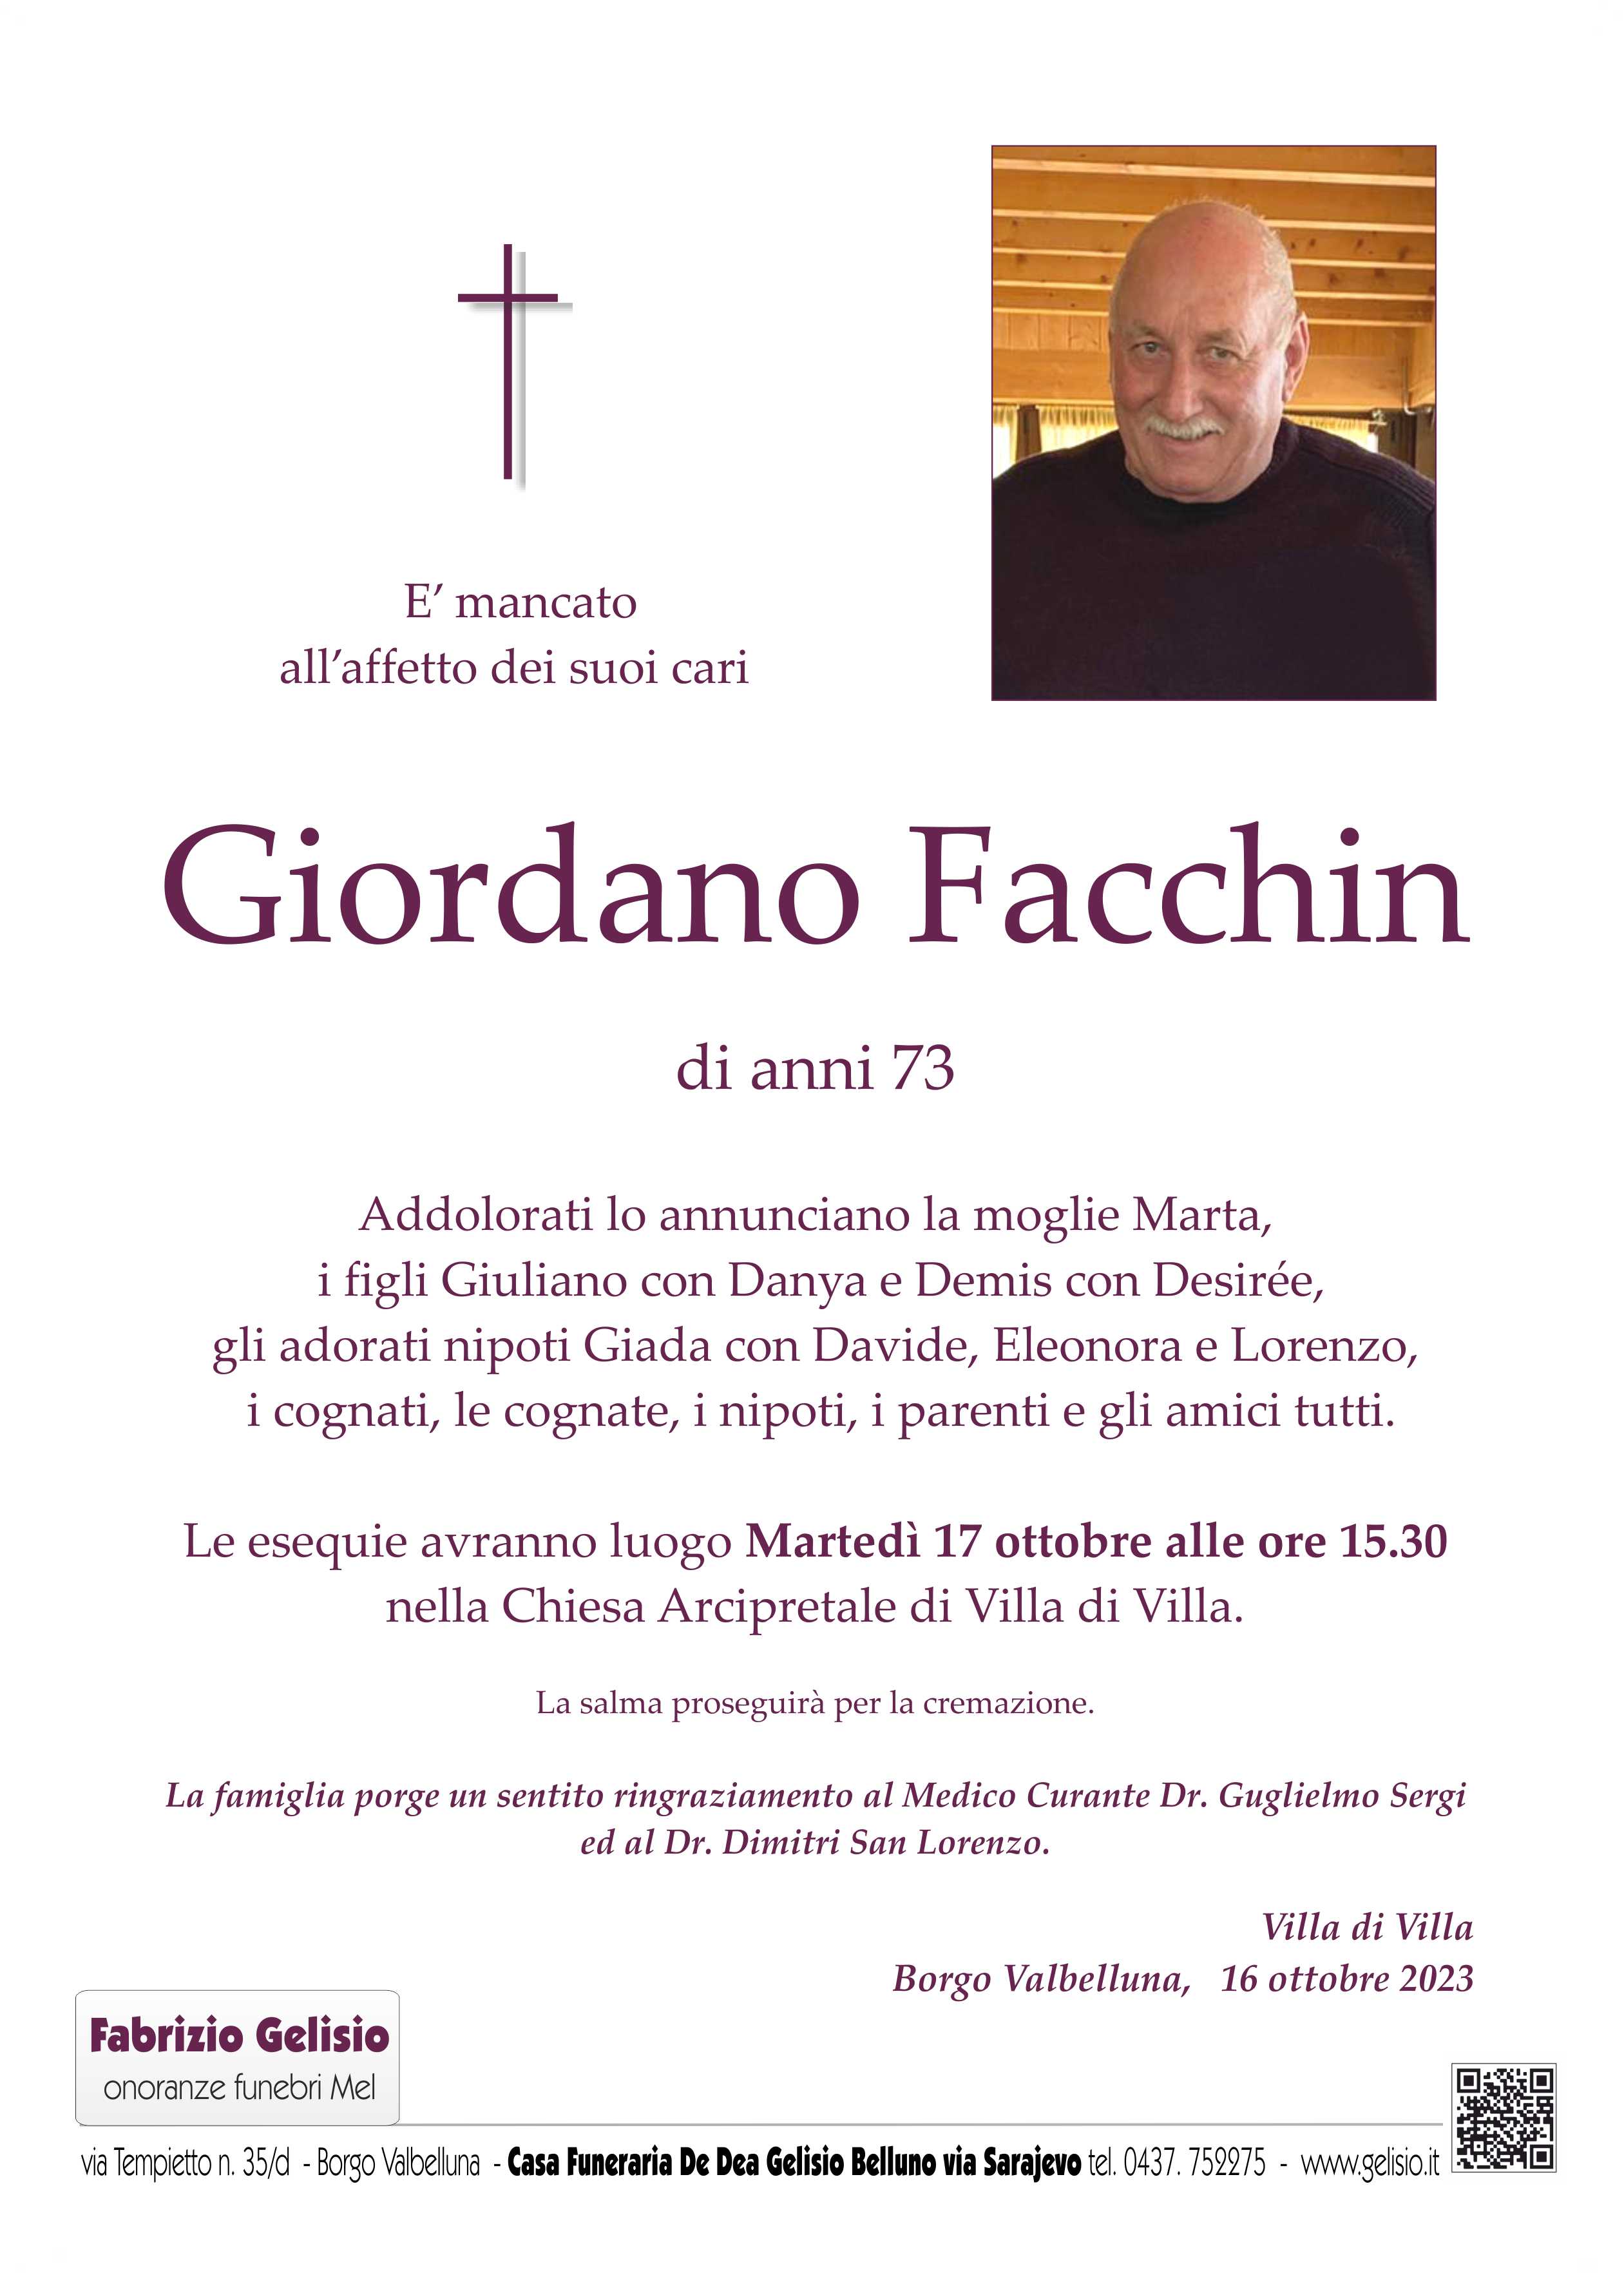 Facchin Giordano